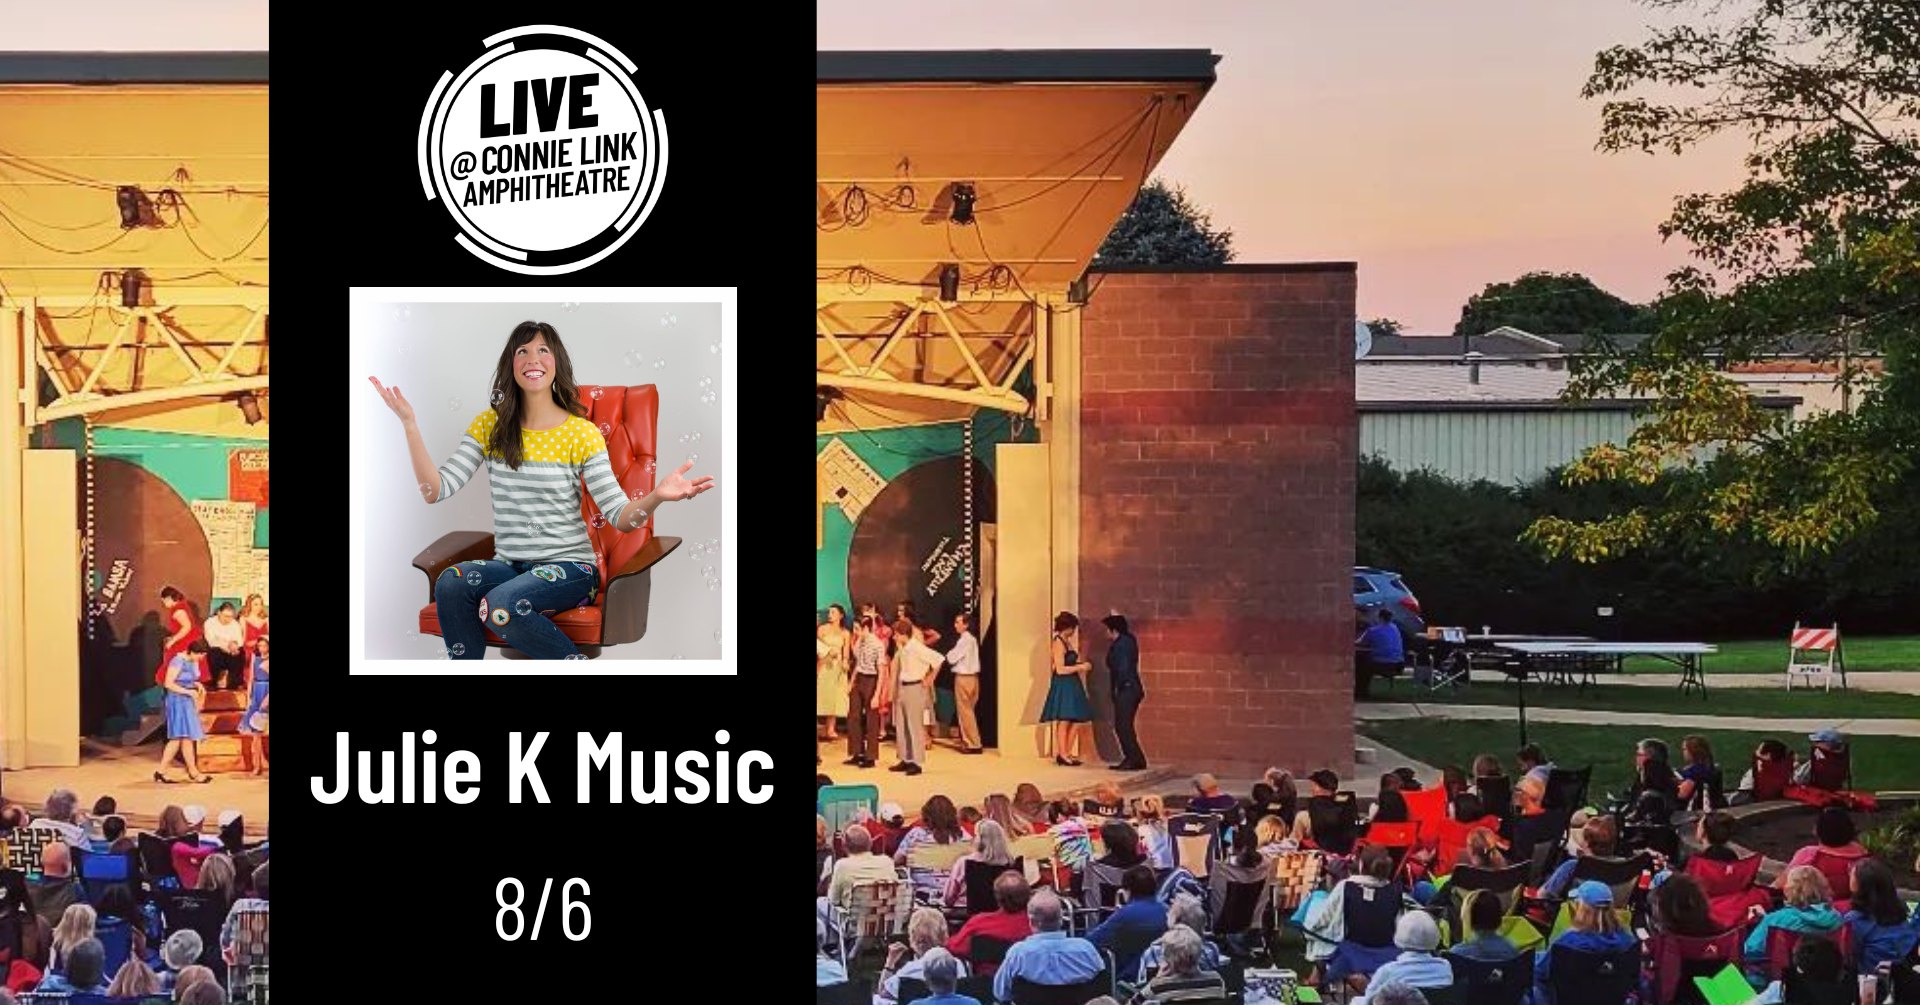 Terrific Tuesdays: Julie K Music - Live @ Connie Link Amphitheatre